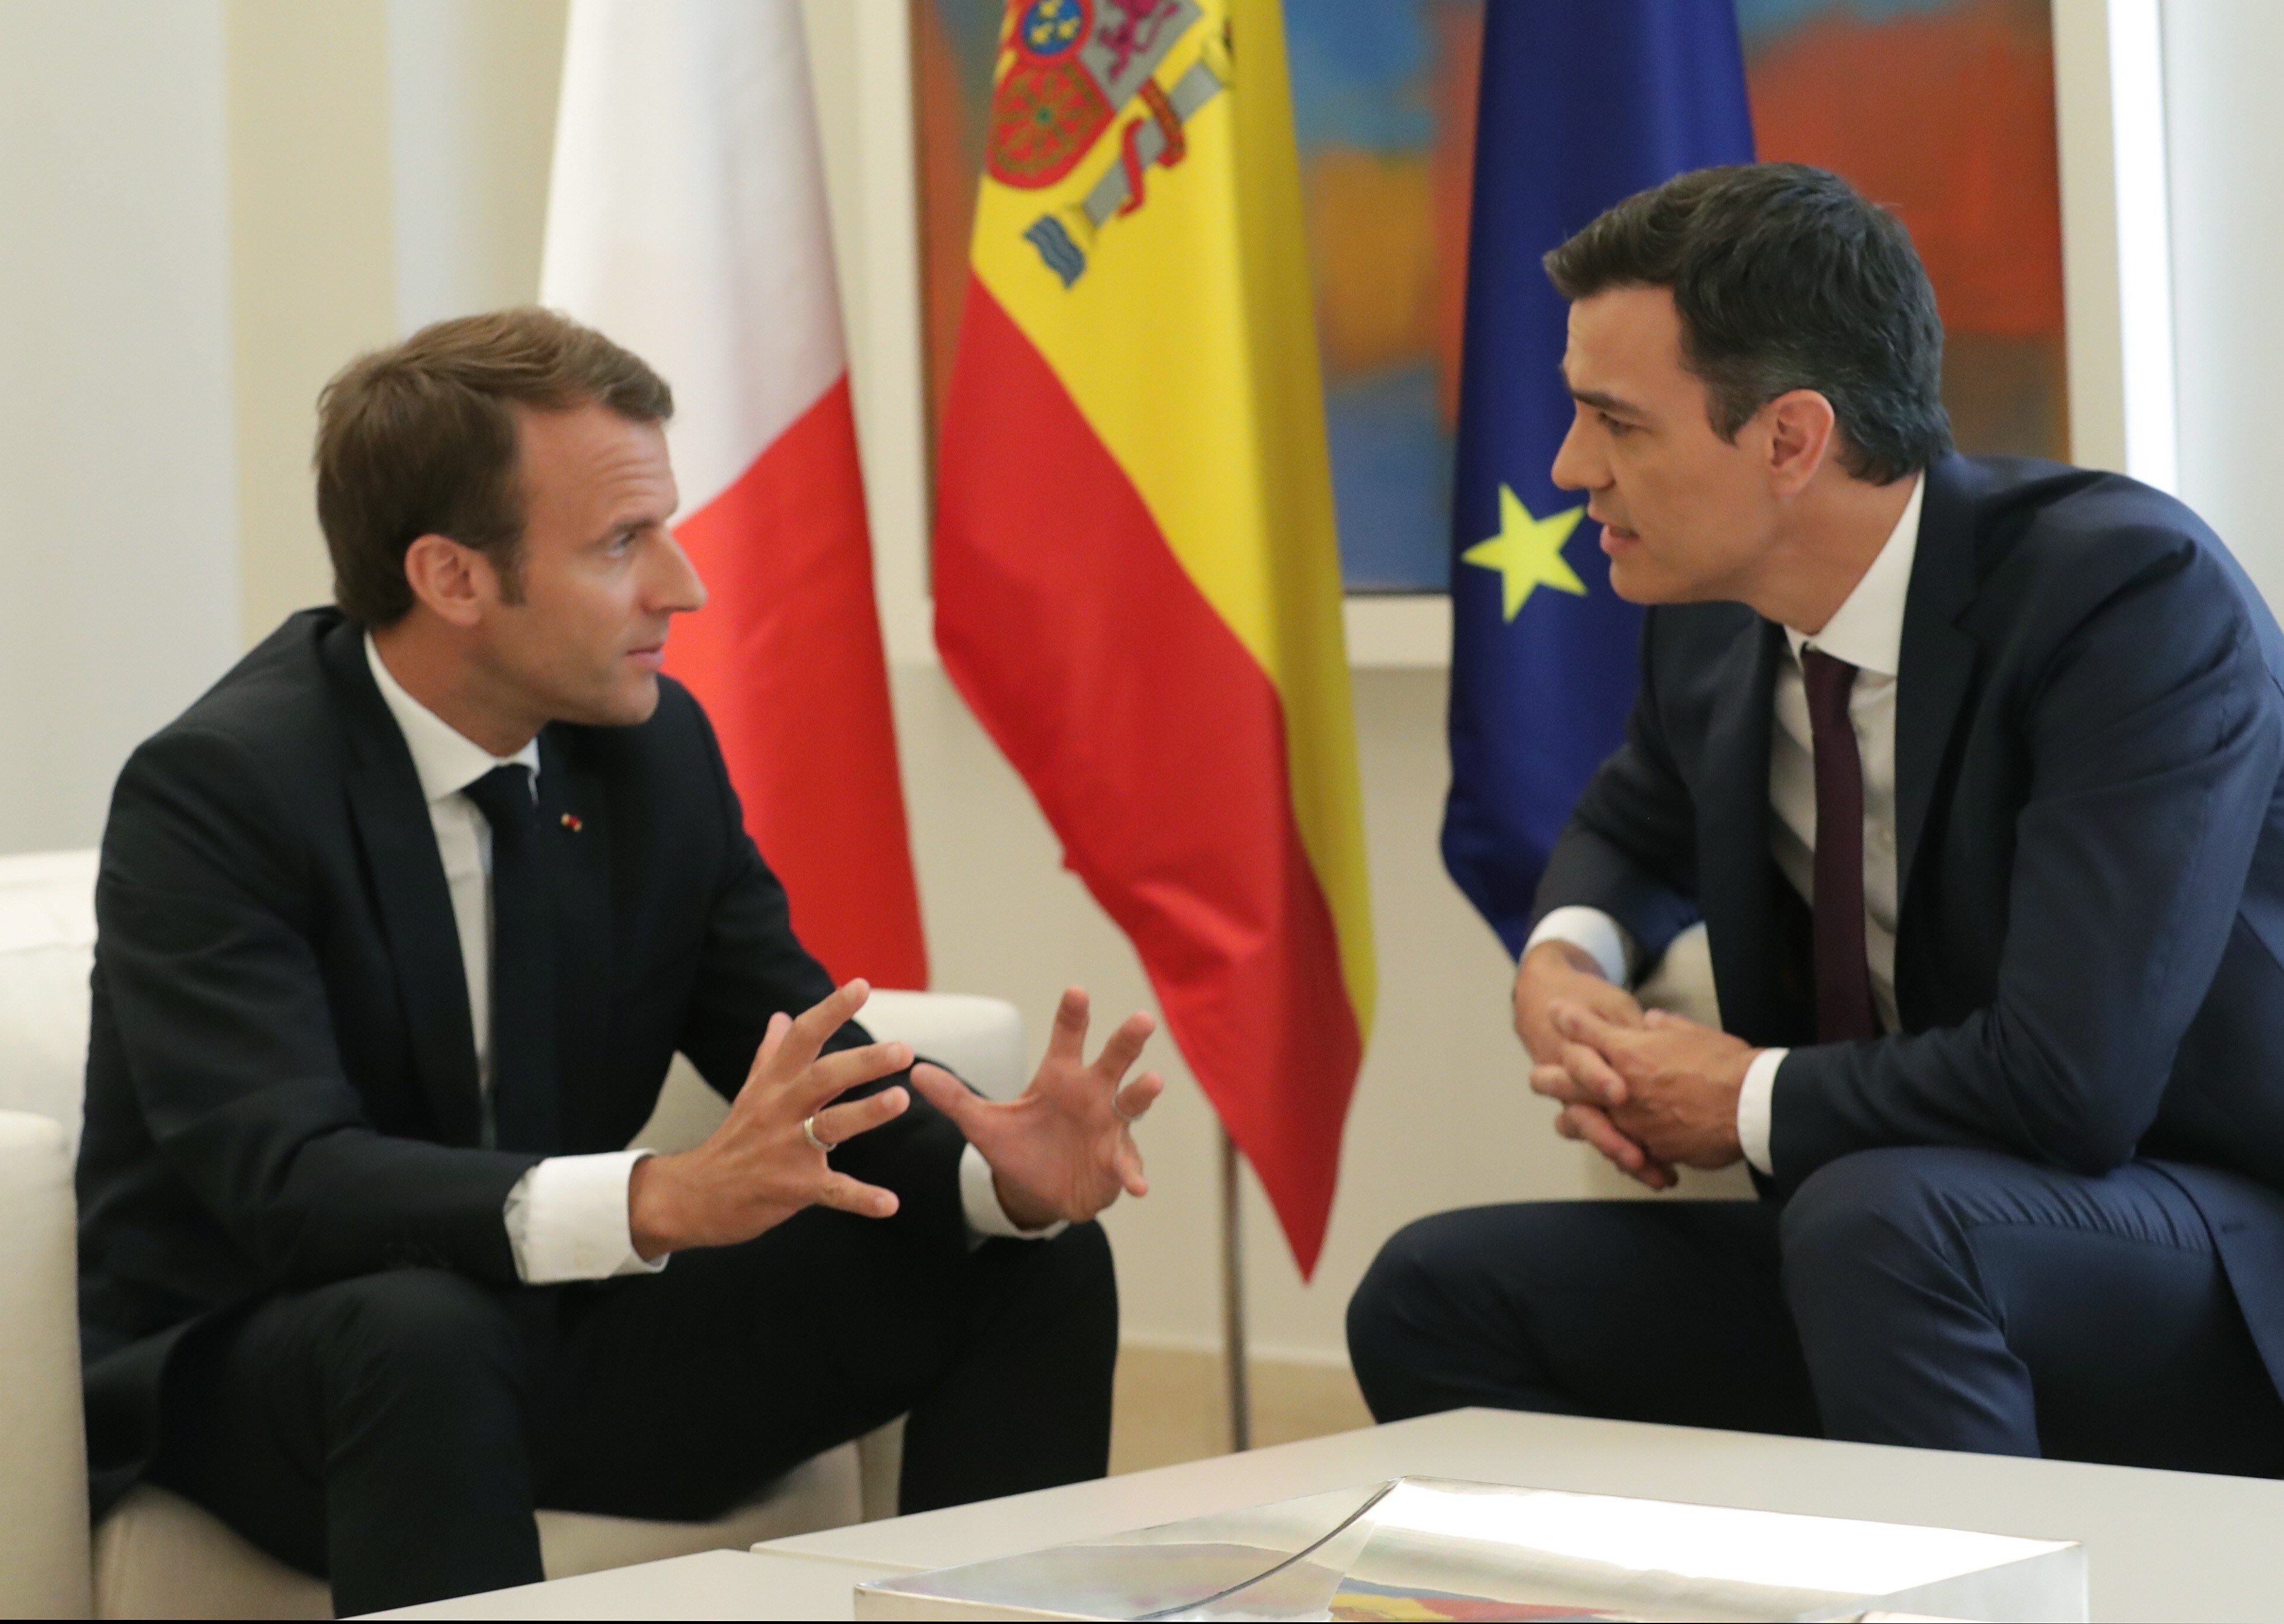 França surt al rescat d'Espanya després que 41 senadors denunciïn el judici